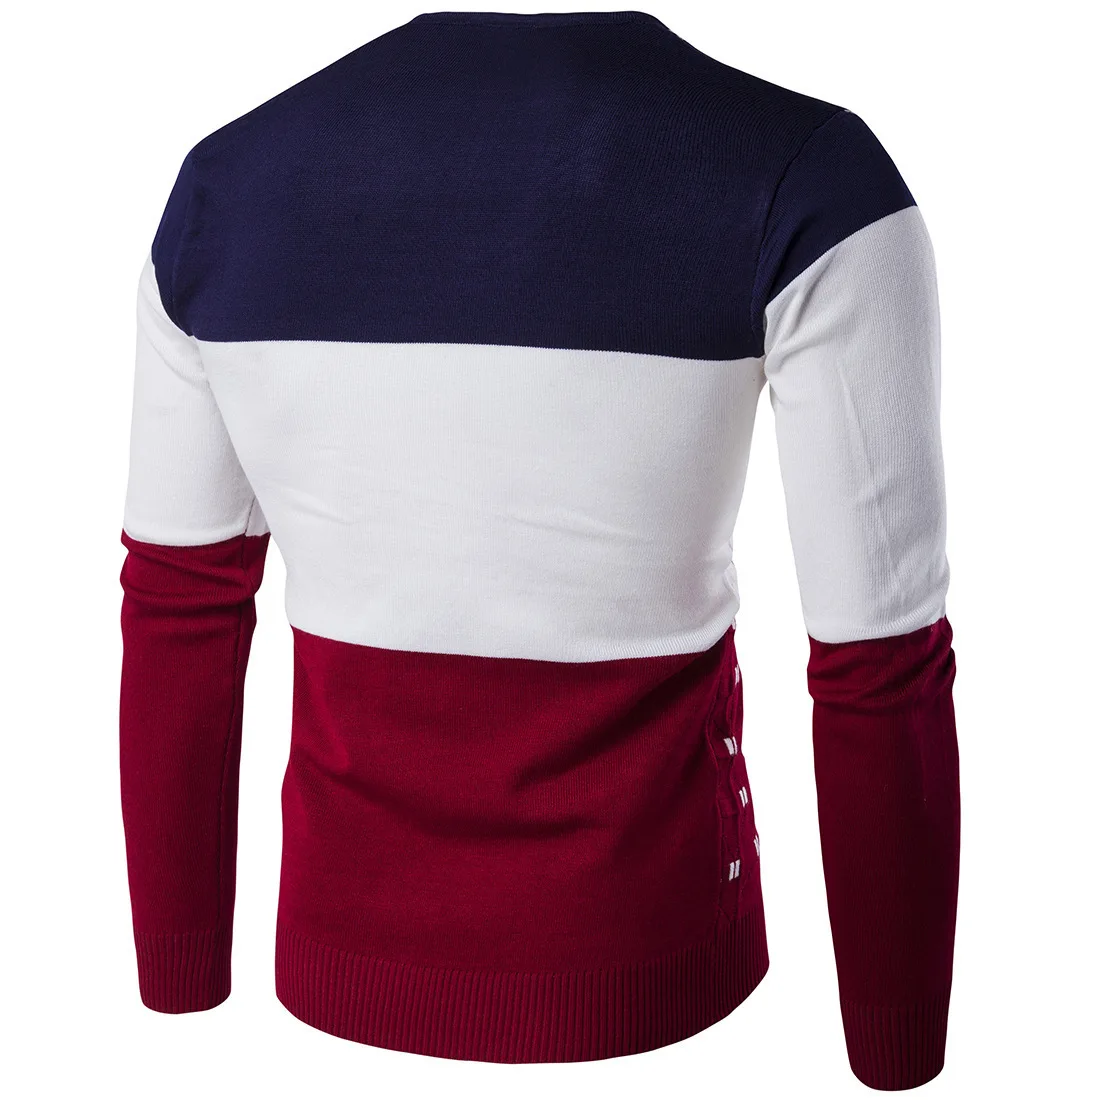 2019 новый полосатый свитер мужской теплый длинный рукав v-образный вырез зимняя одежда для мужской моды Slim Fit принт пуловер свитер 5 цветов